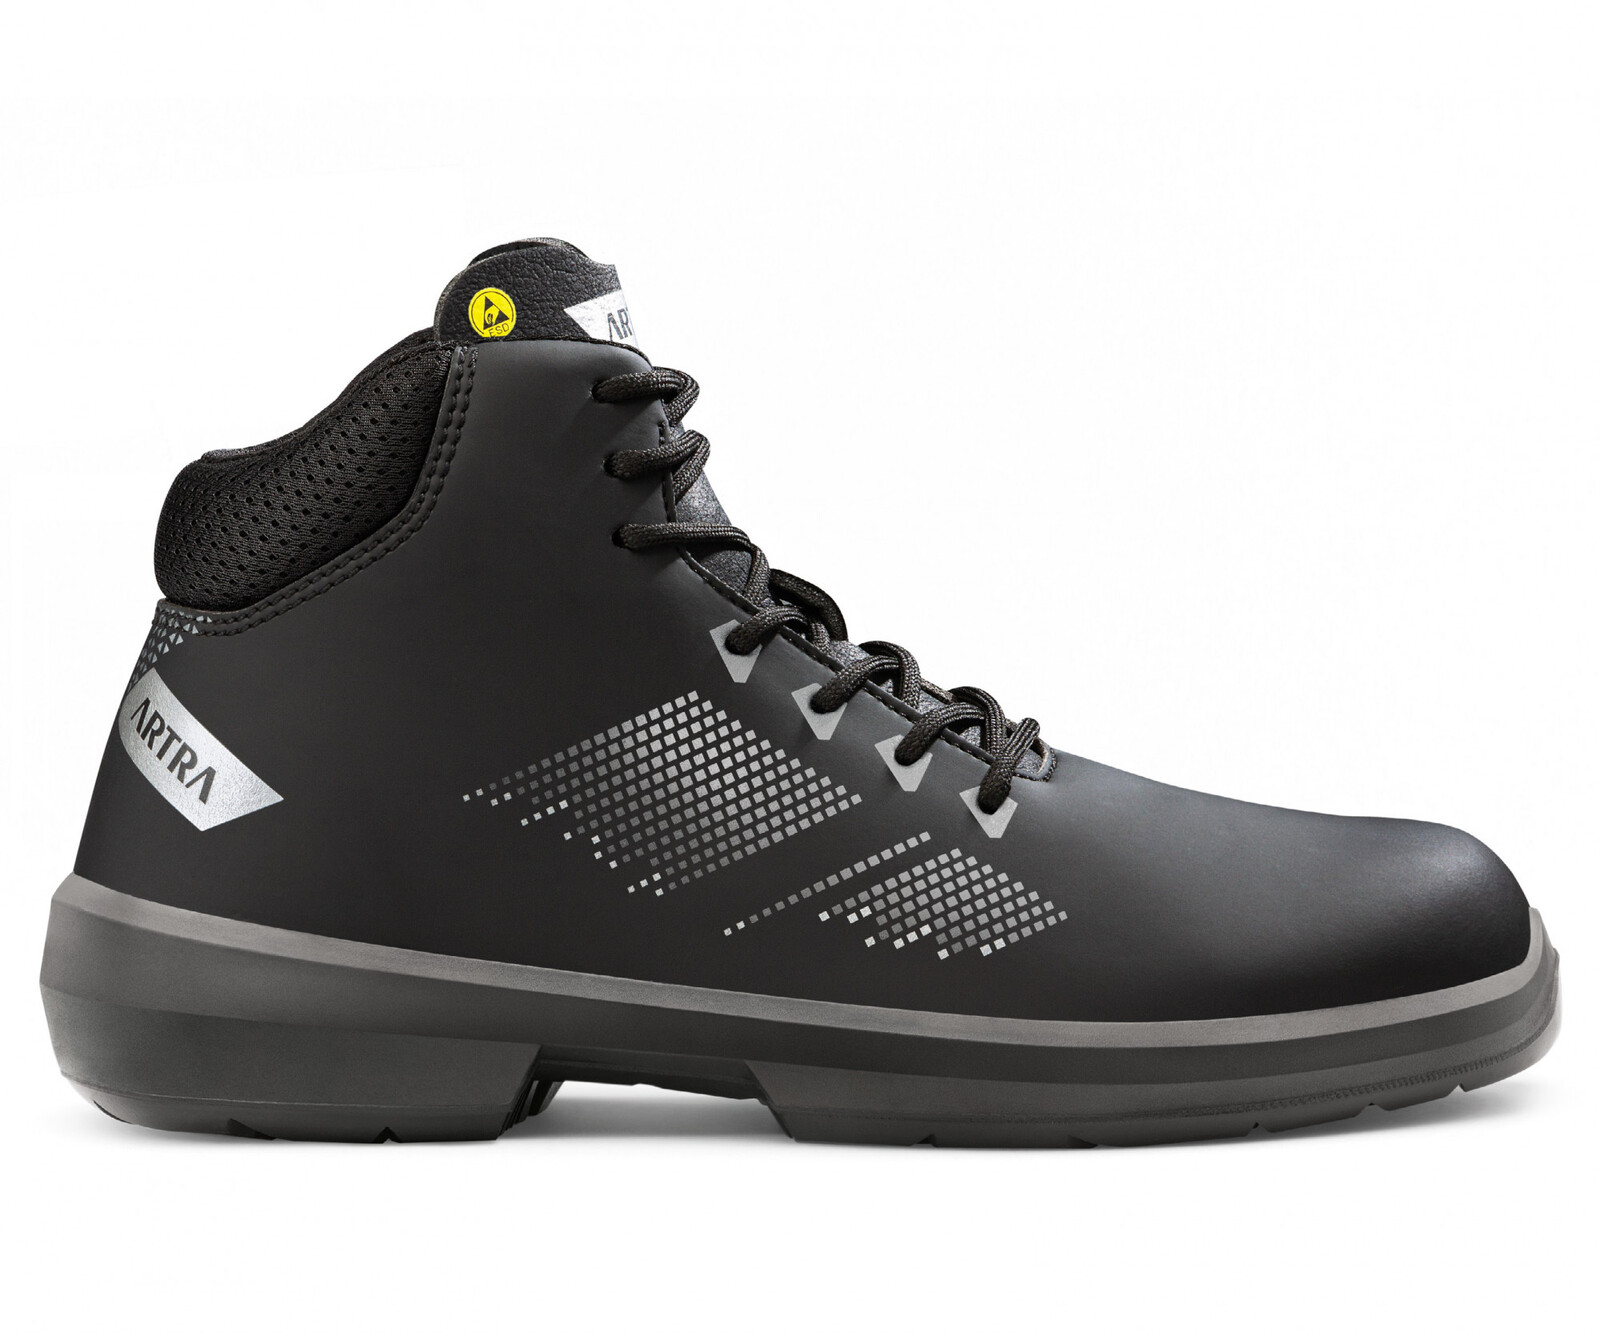 Bezpečnostná členková obuv Artra Arrival 855 676560 S3 SRC ESD MF - veľkosť: 35, farba: čierna/sivá